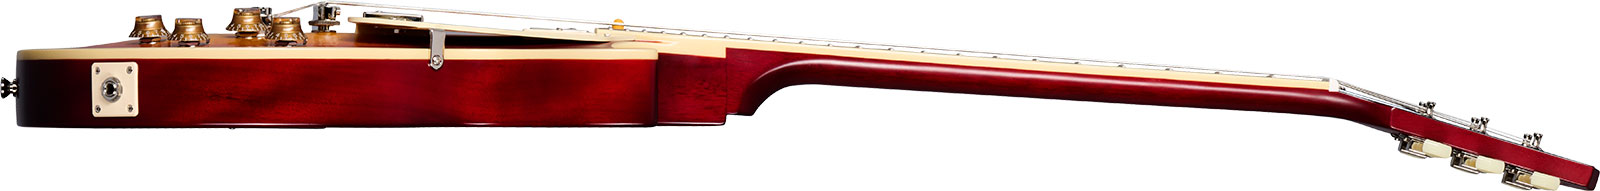 Epiphone 1959 Les Paul Standard Inspired By 2h Gibson Ht Lau - Vos Factory Burst - Guitare Électrique Single Cut - Variation 2